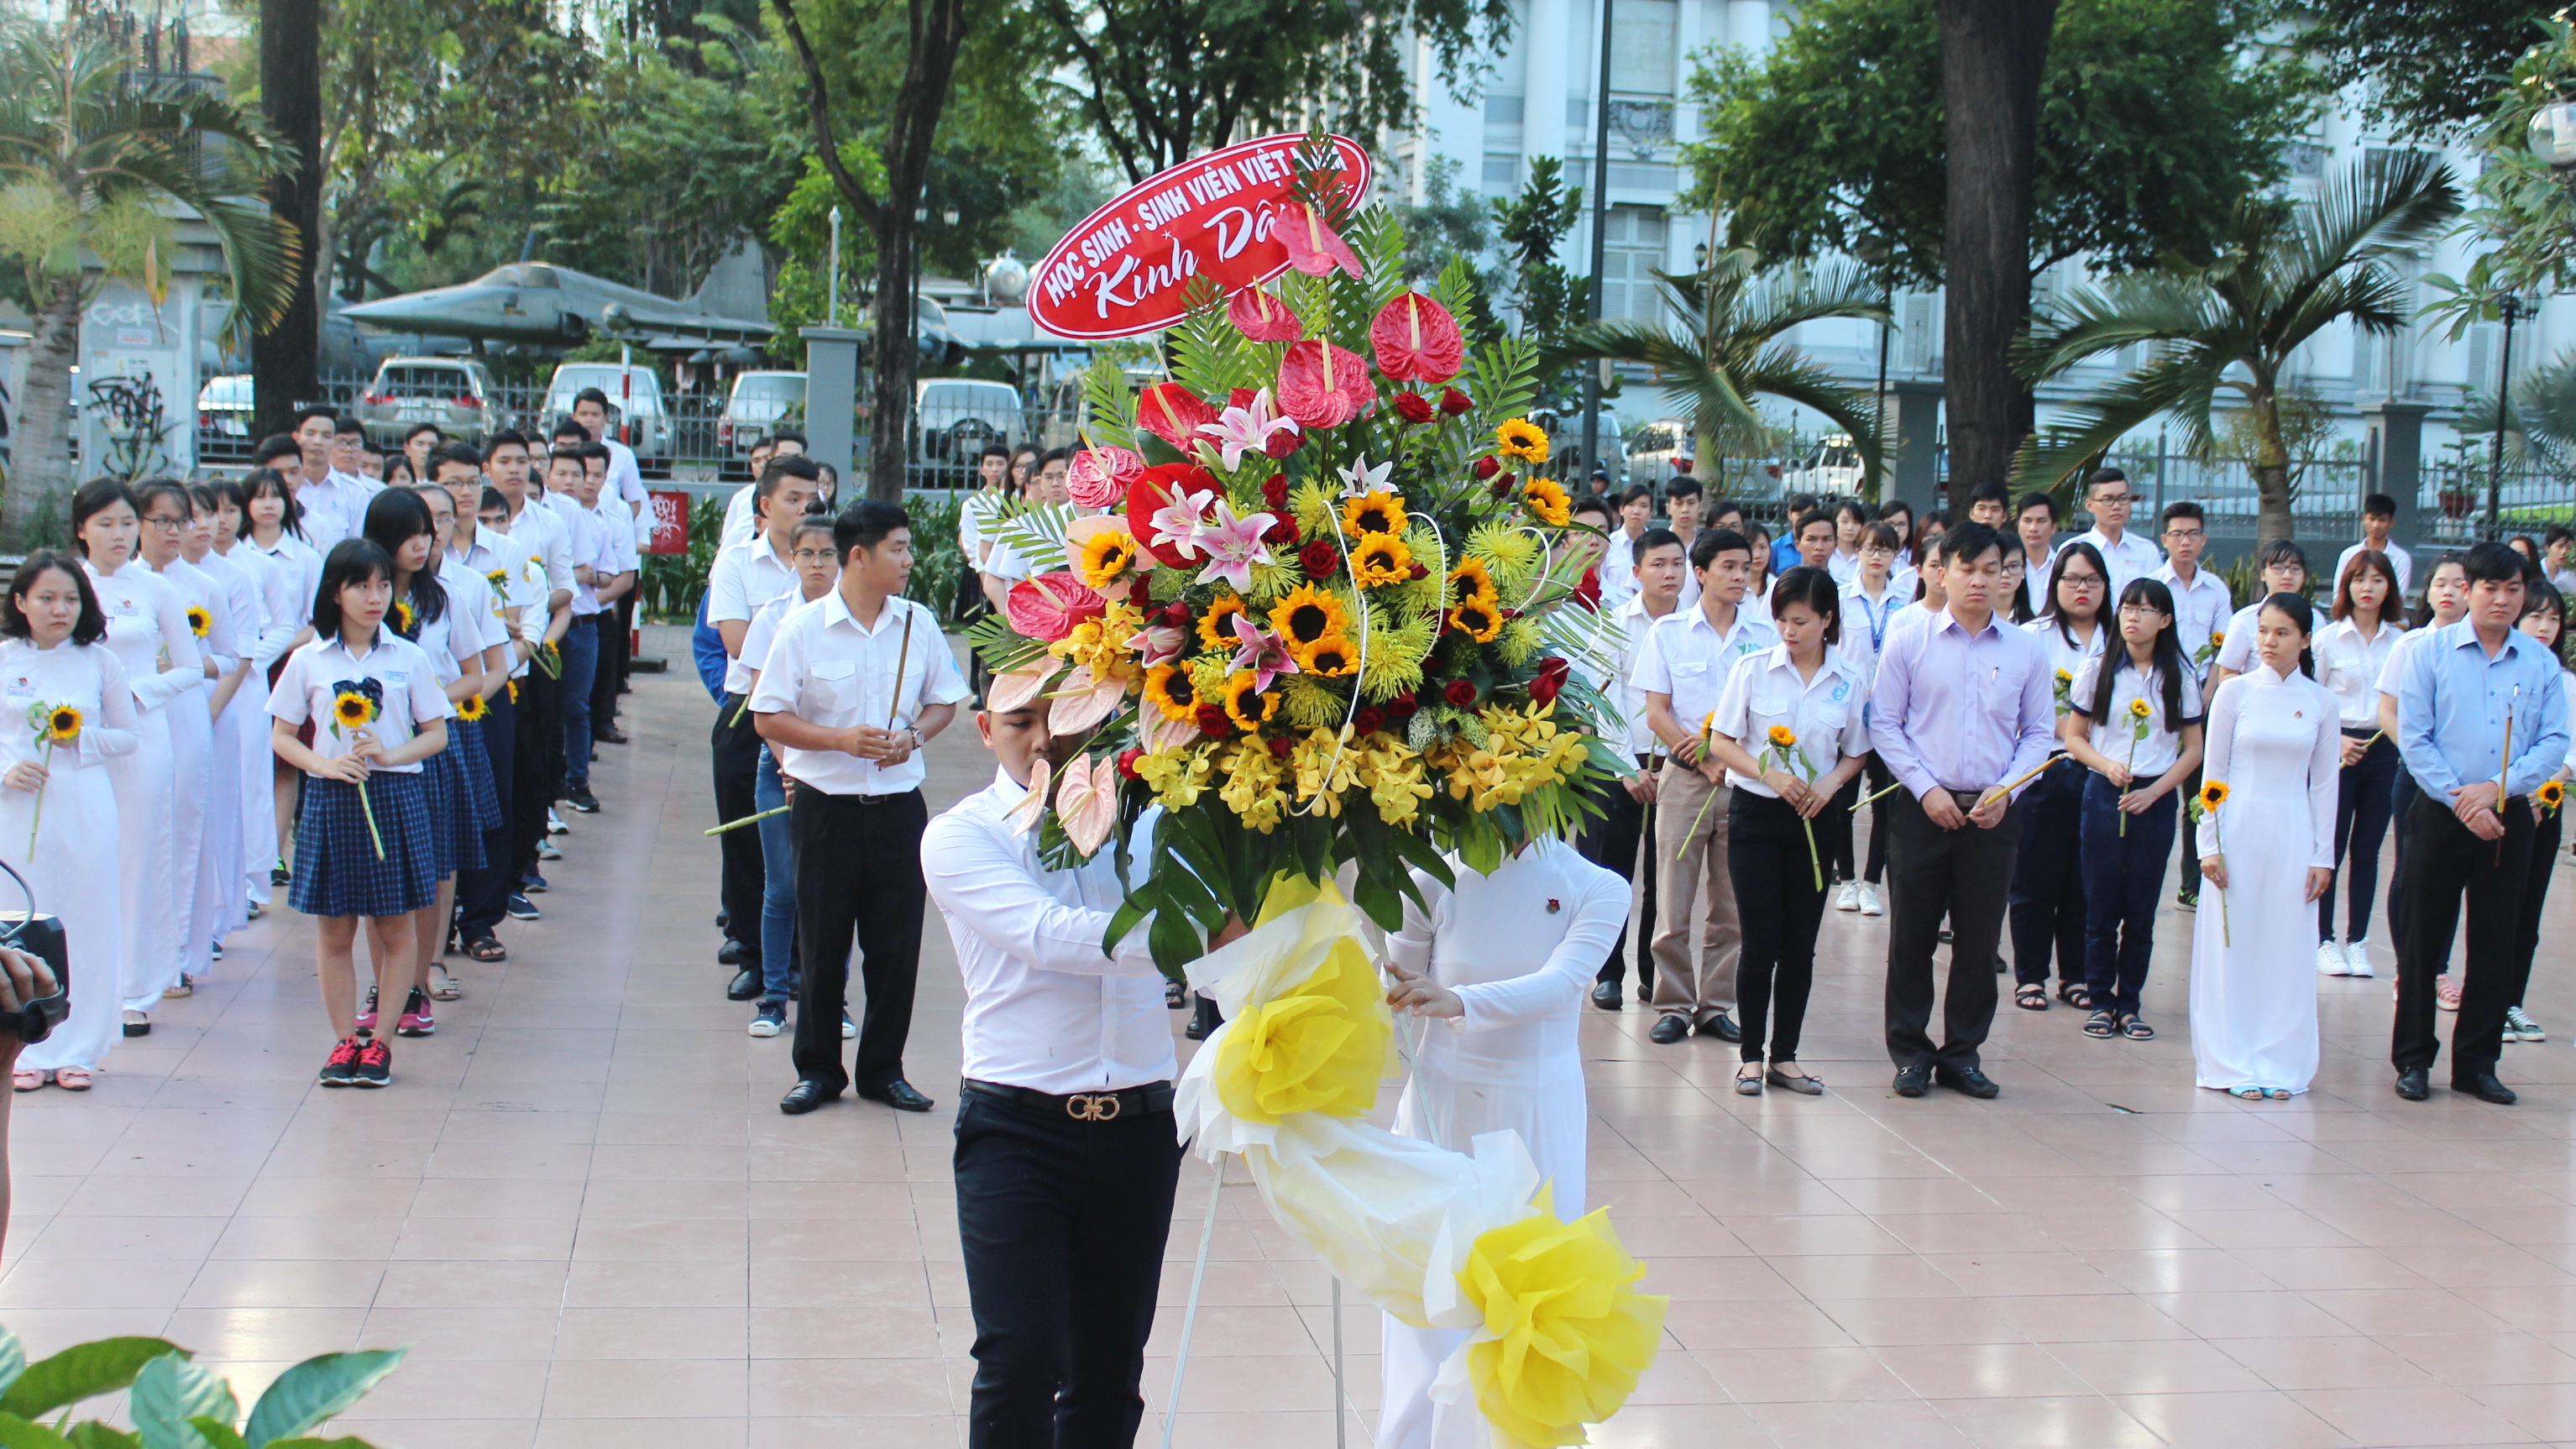 Lễ dâng hoa tại tượng đài anh hùng Trần Văn Ơn trong công viên Bách Tùng Diệp (Q.1, TP.HCM) - Ảnh: Q.L.